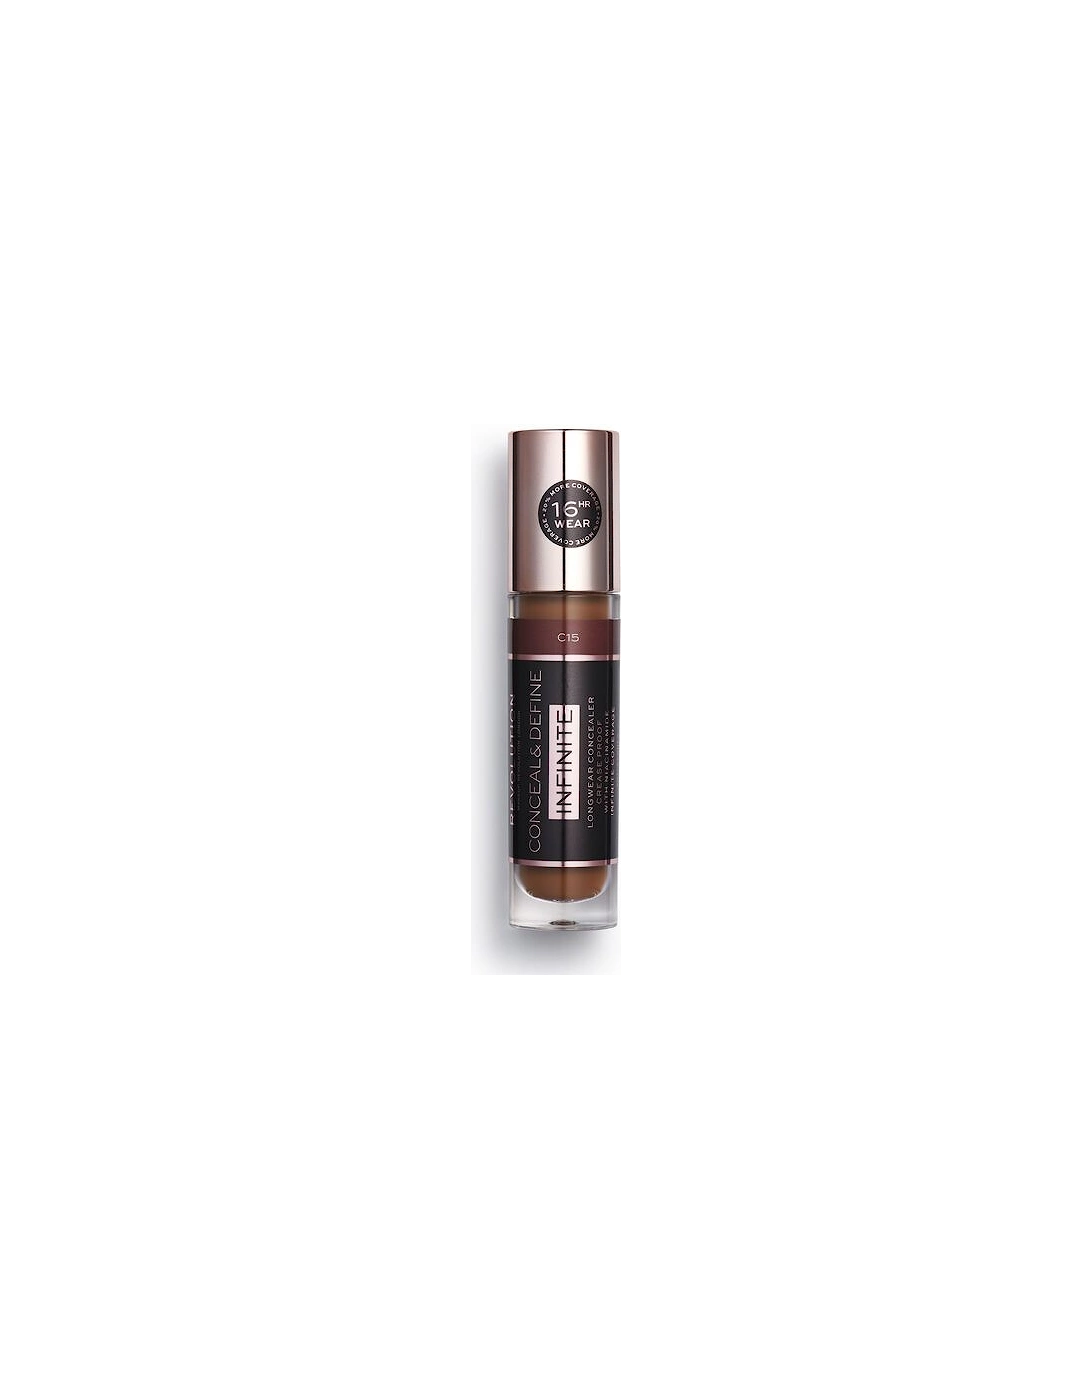 Makeup Conceal & Define Infinite Longwear Concealer XL (9ml) C15, 2 of 1